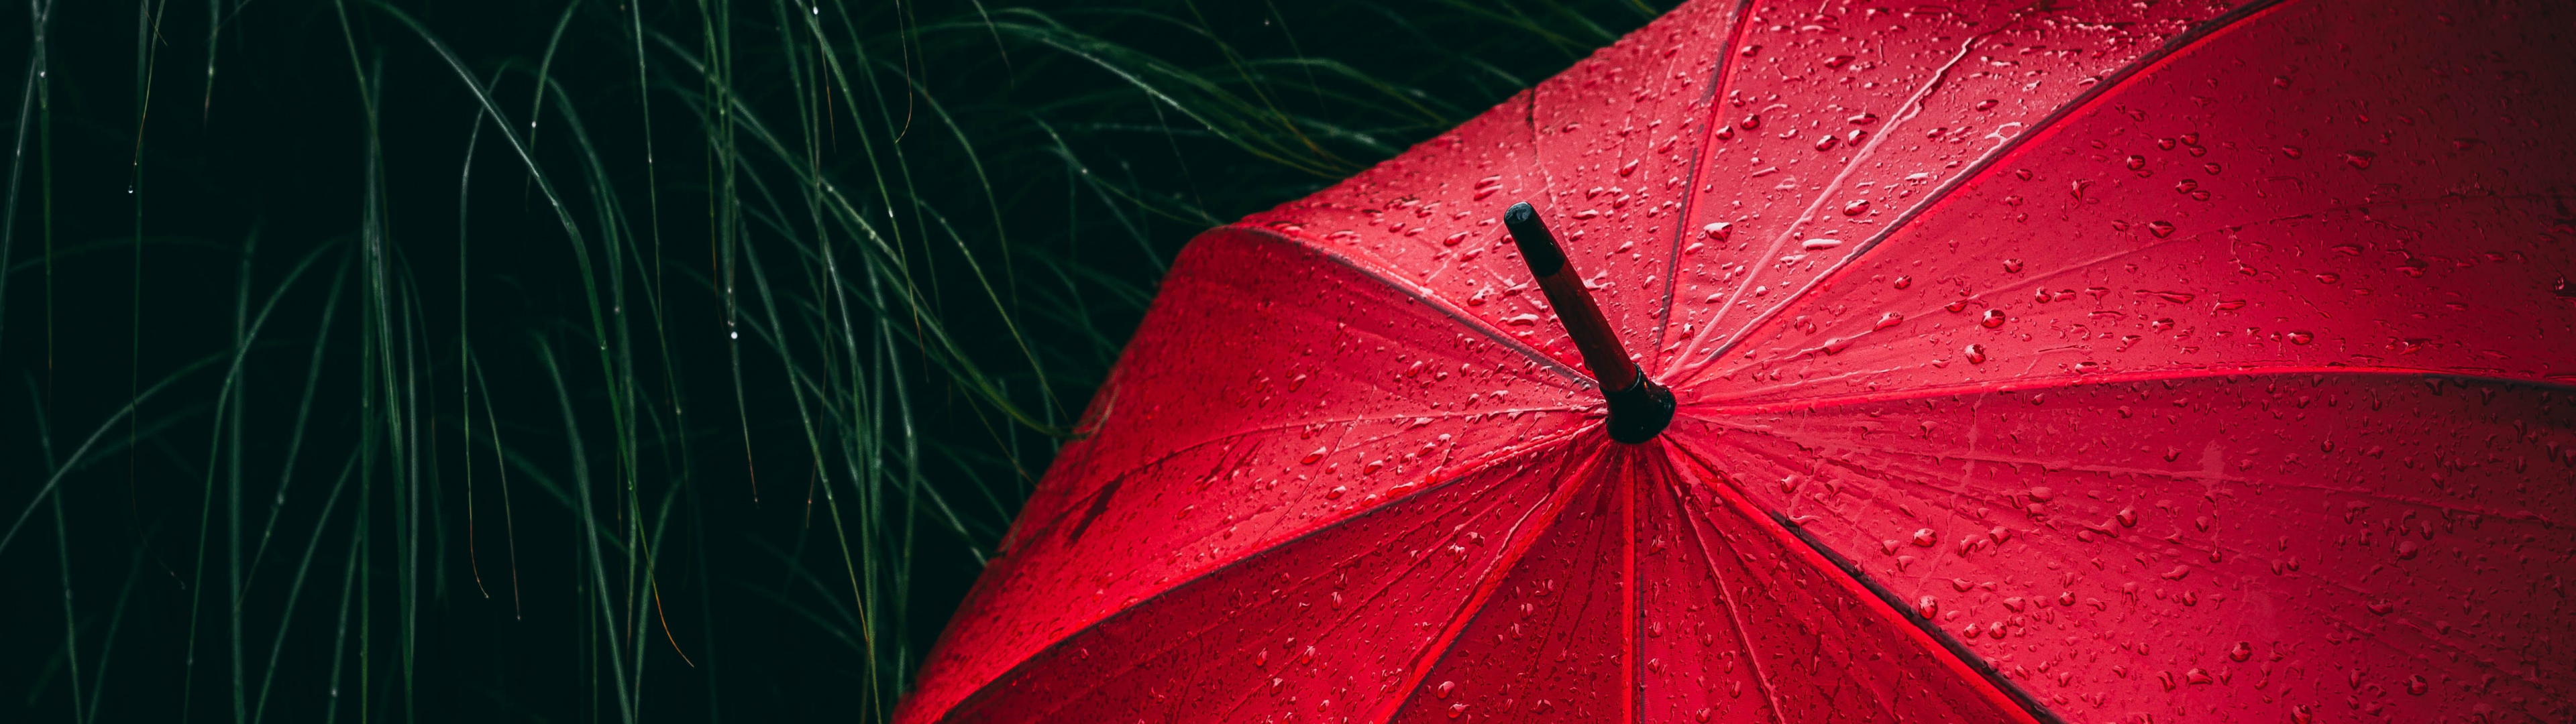 Umbrella Wallpaper 4K, Red, Rain droplets, Photography, #707